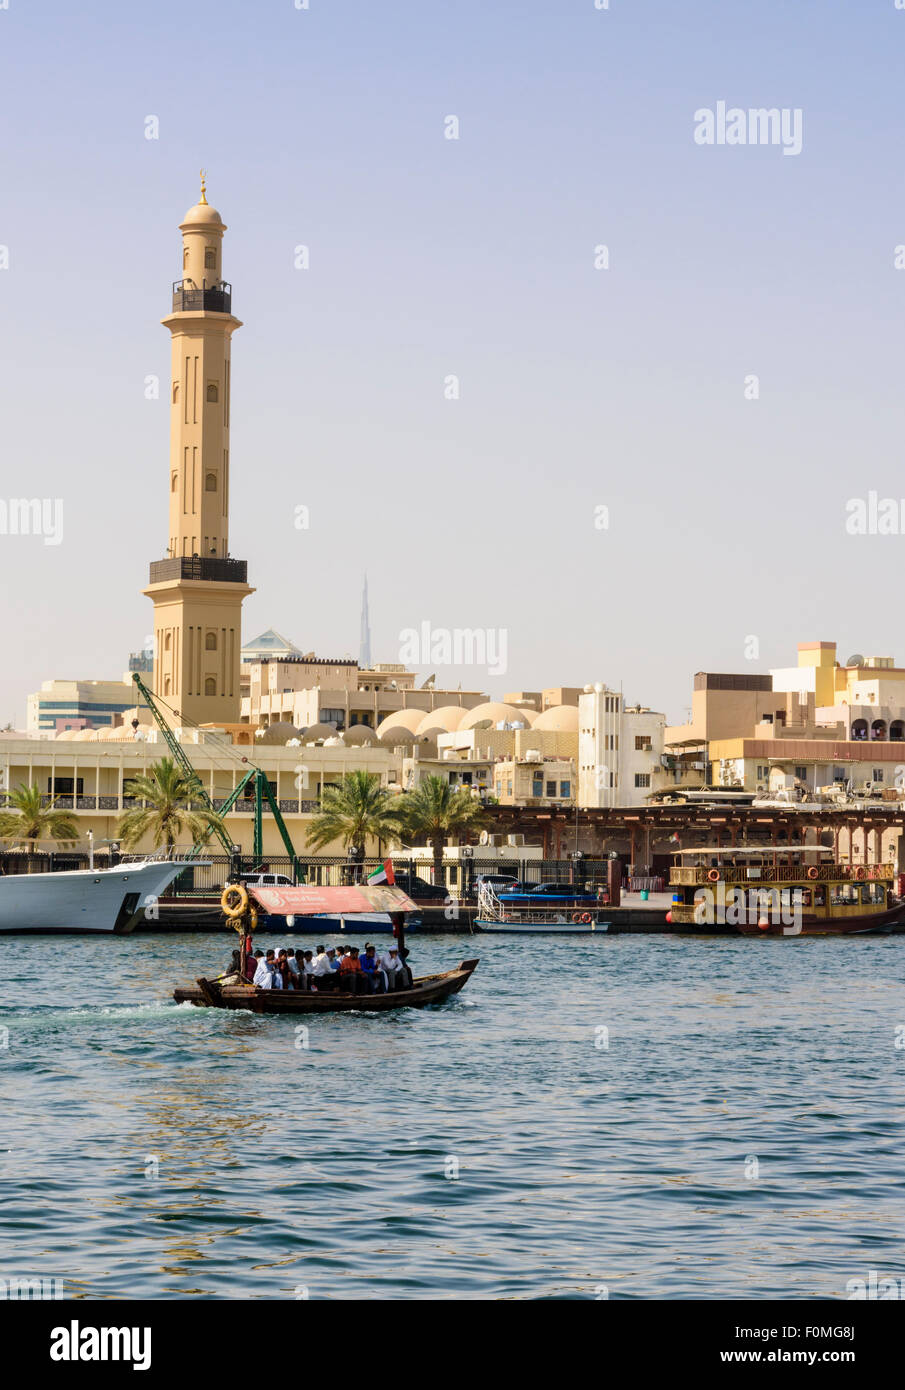 Abra bateau avec vue sur le minaret de la Grande Mosquée, la Crique de Dubaï, Deira, DUBAÏ, ÉMIRATS ARABES UNIS Banque D'Images